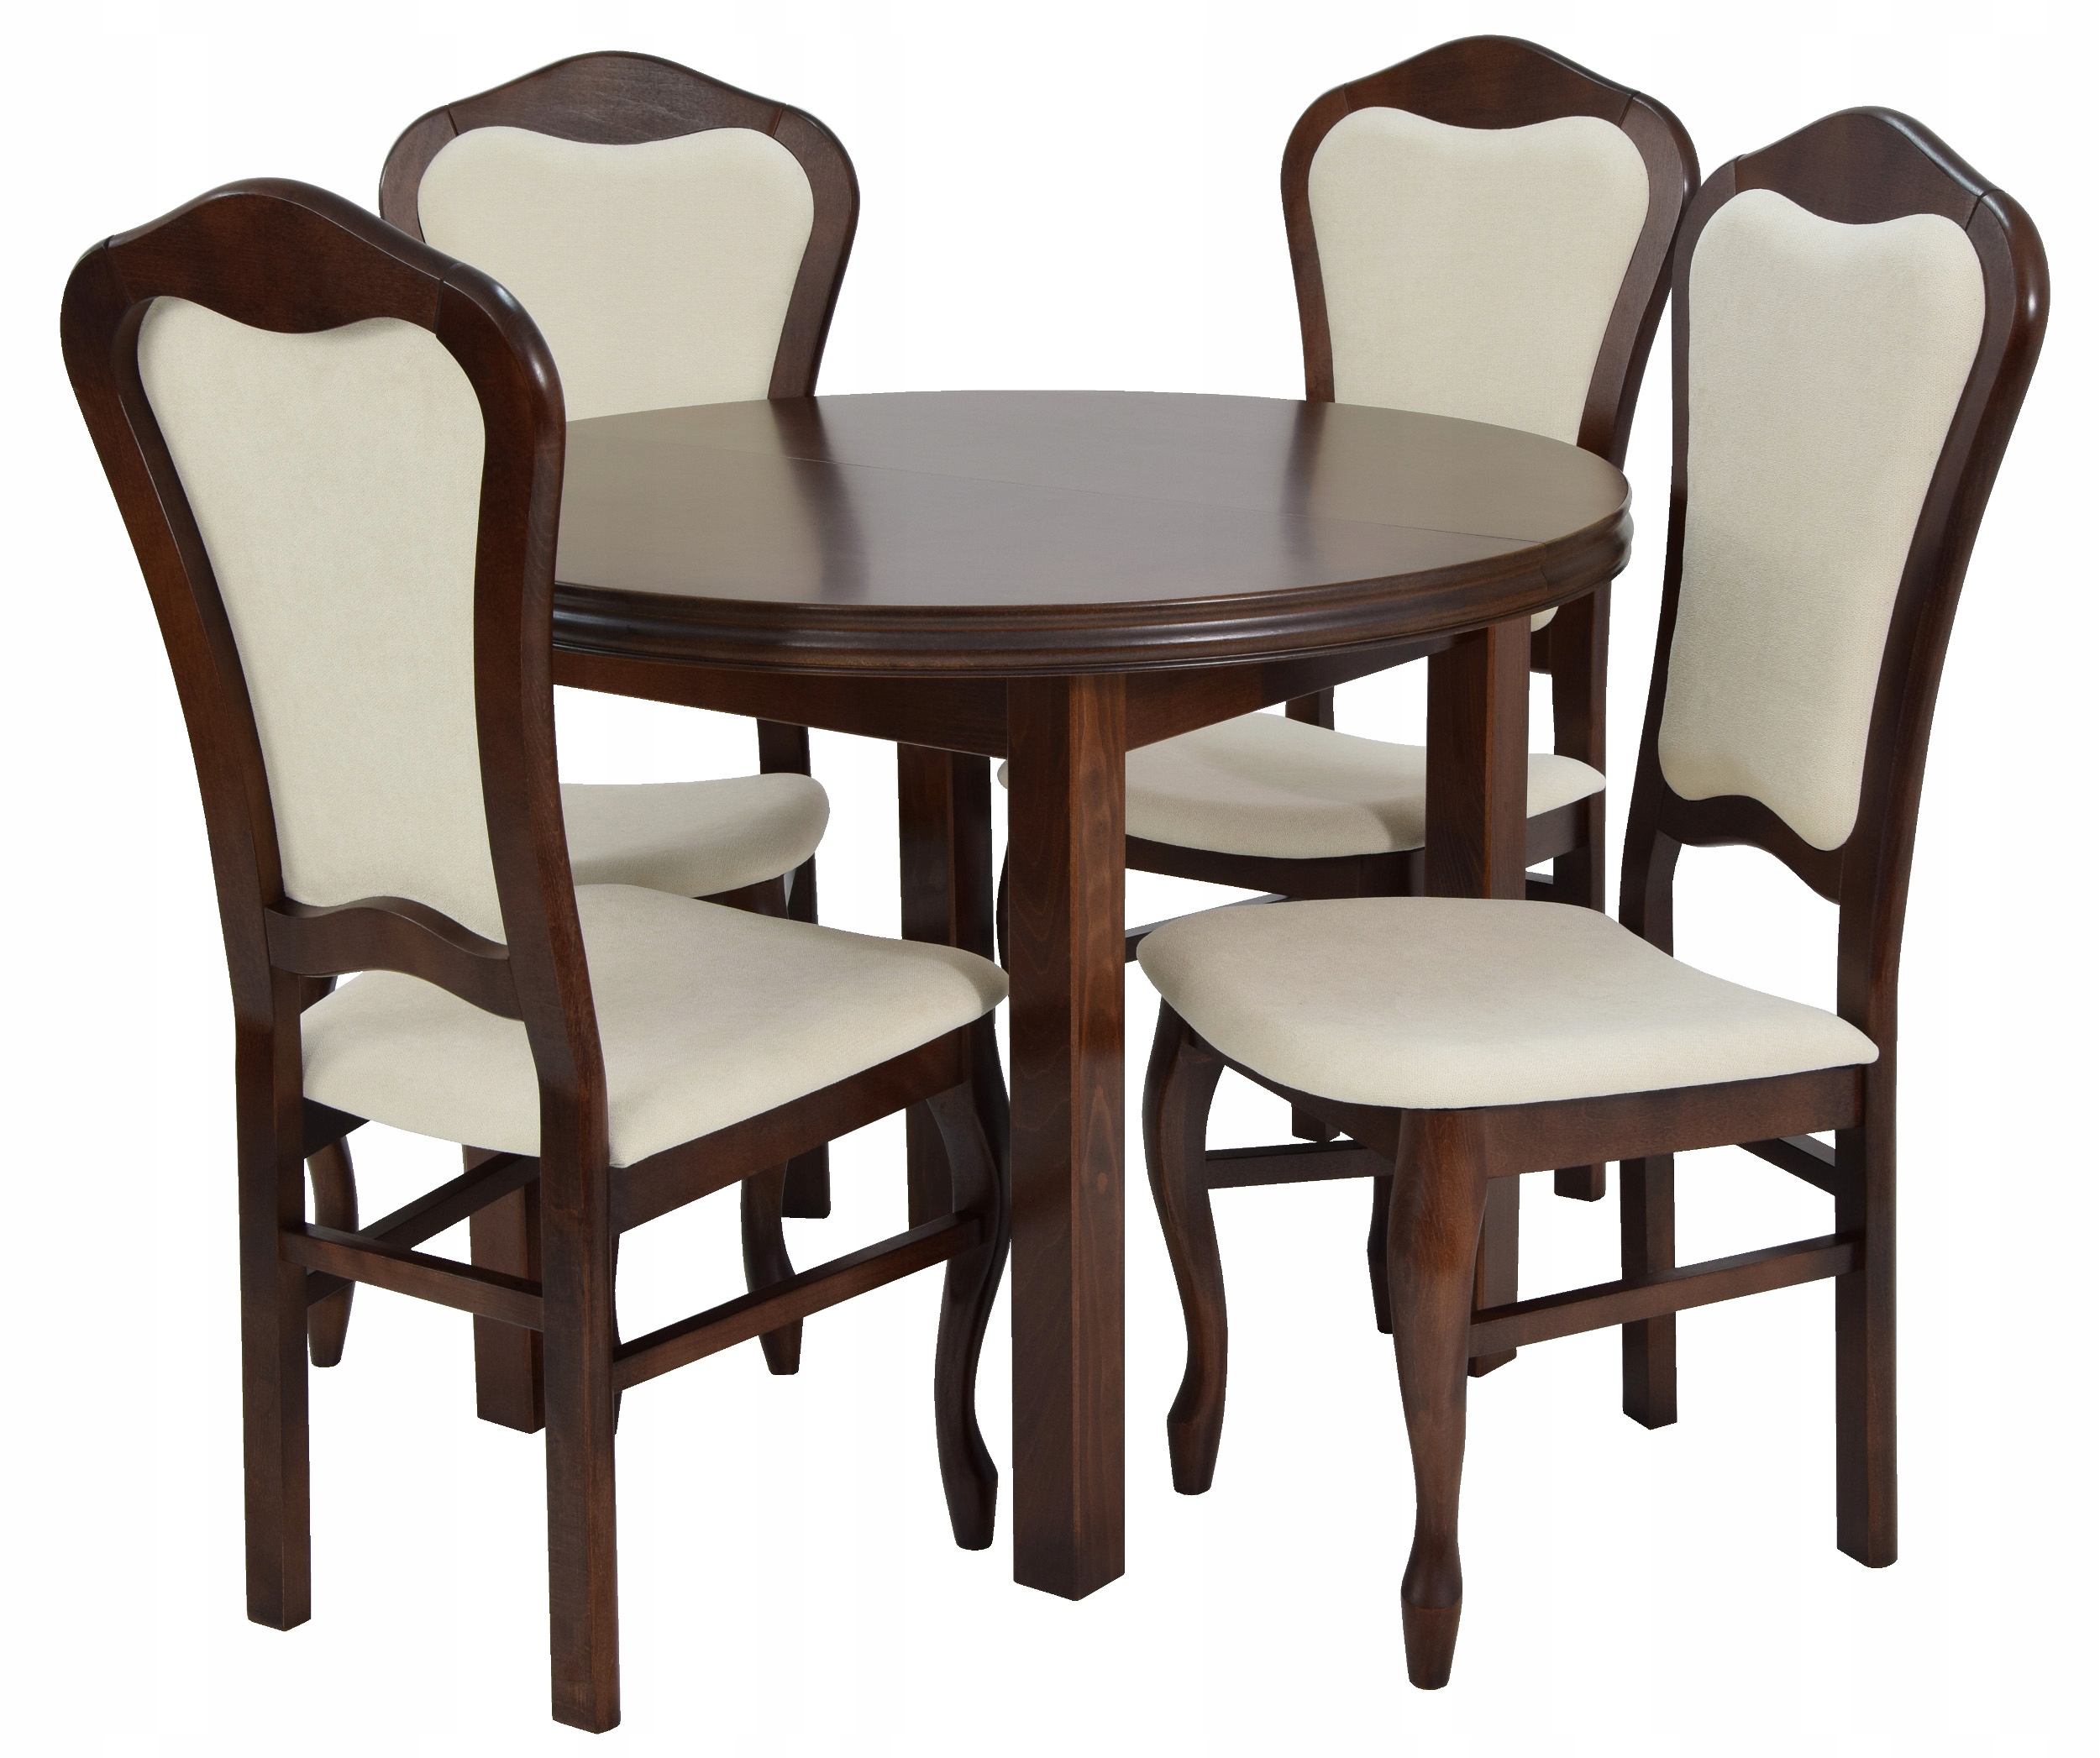 Купить кухонные стулья комплект. Большой стол 12 стульев 100x200300. Комплект Langfang: стол + 4 стула. Столы и стулья для кухни. Кухонный стол и стулья.